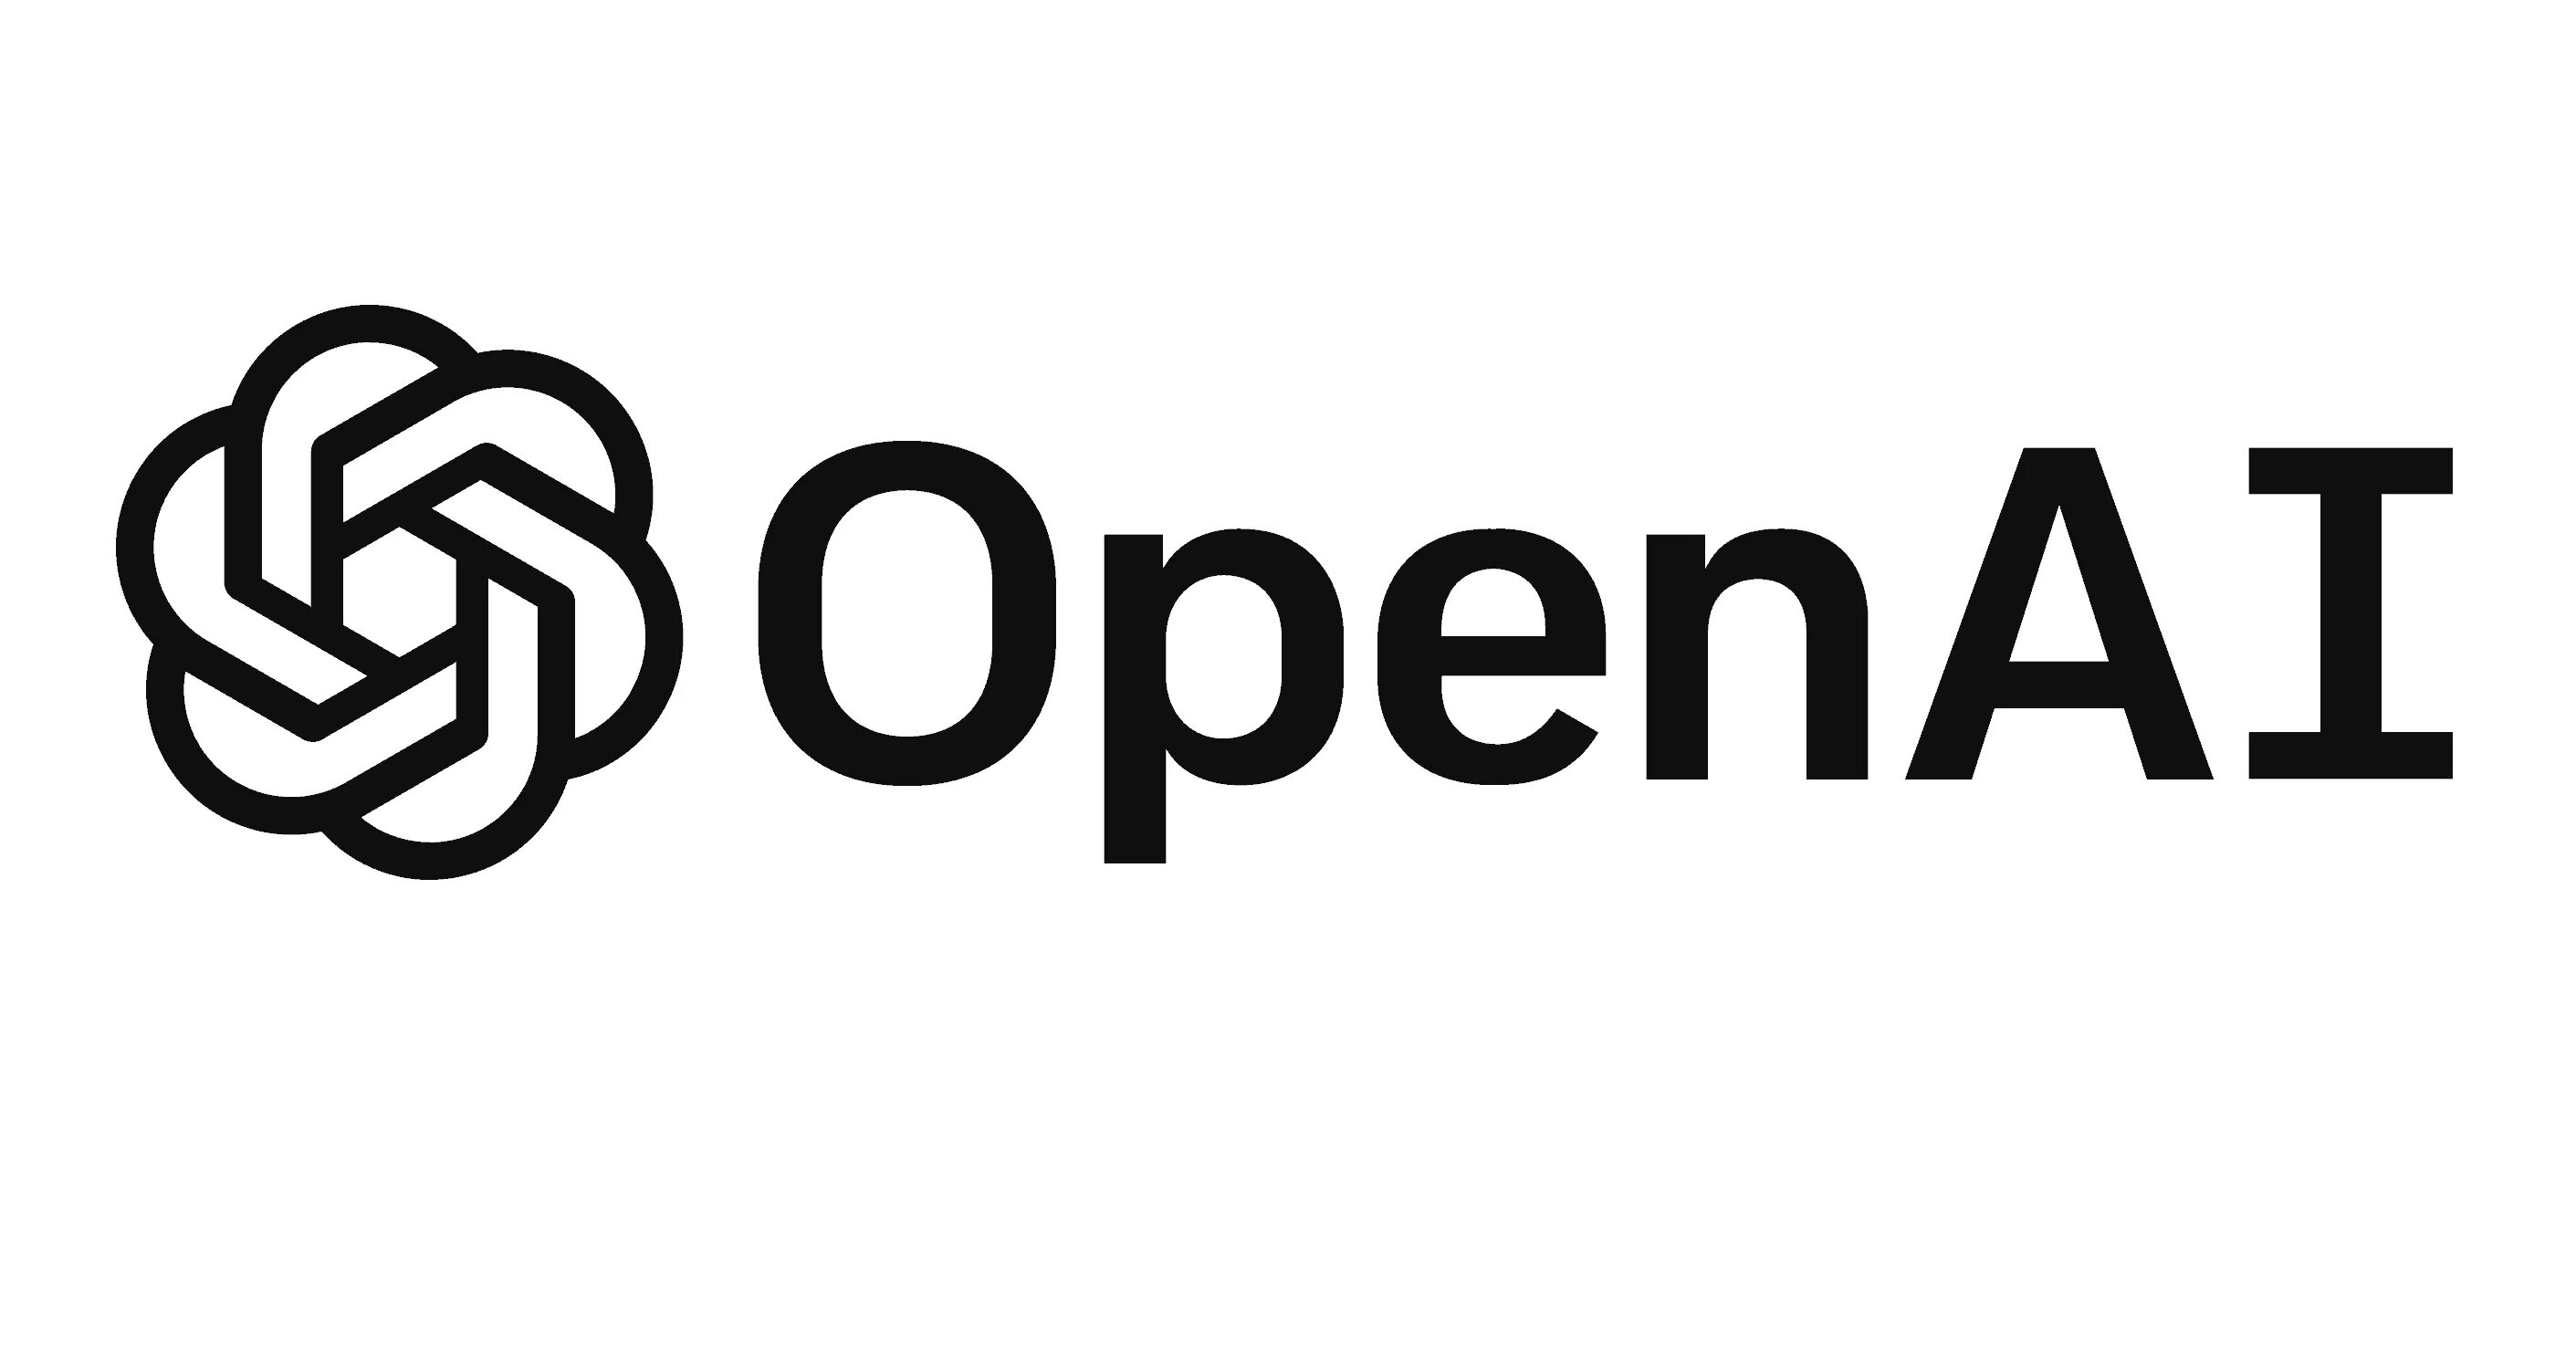 Openia chat. НКО OPENAI. Компания open ai. Логотип опен АИ. Chatgpt логотип.